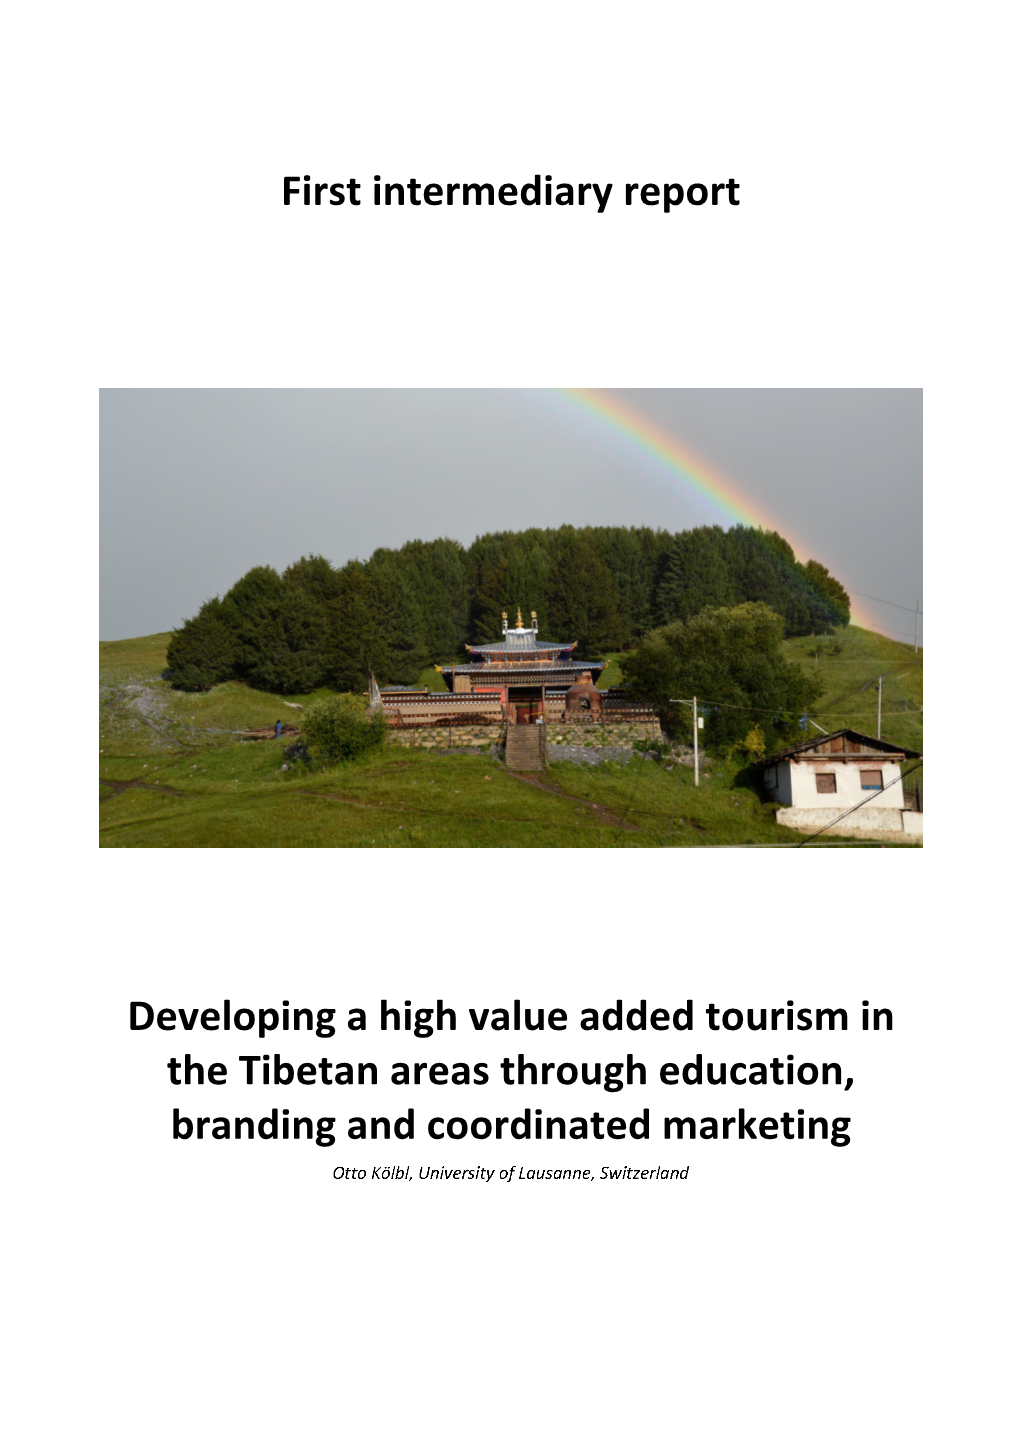 Tourism in Tibetan Areas